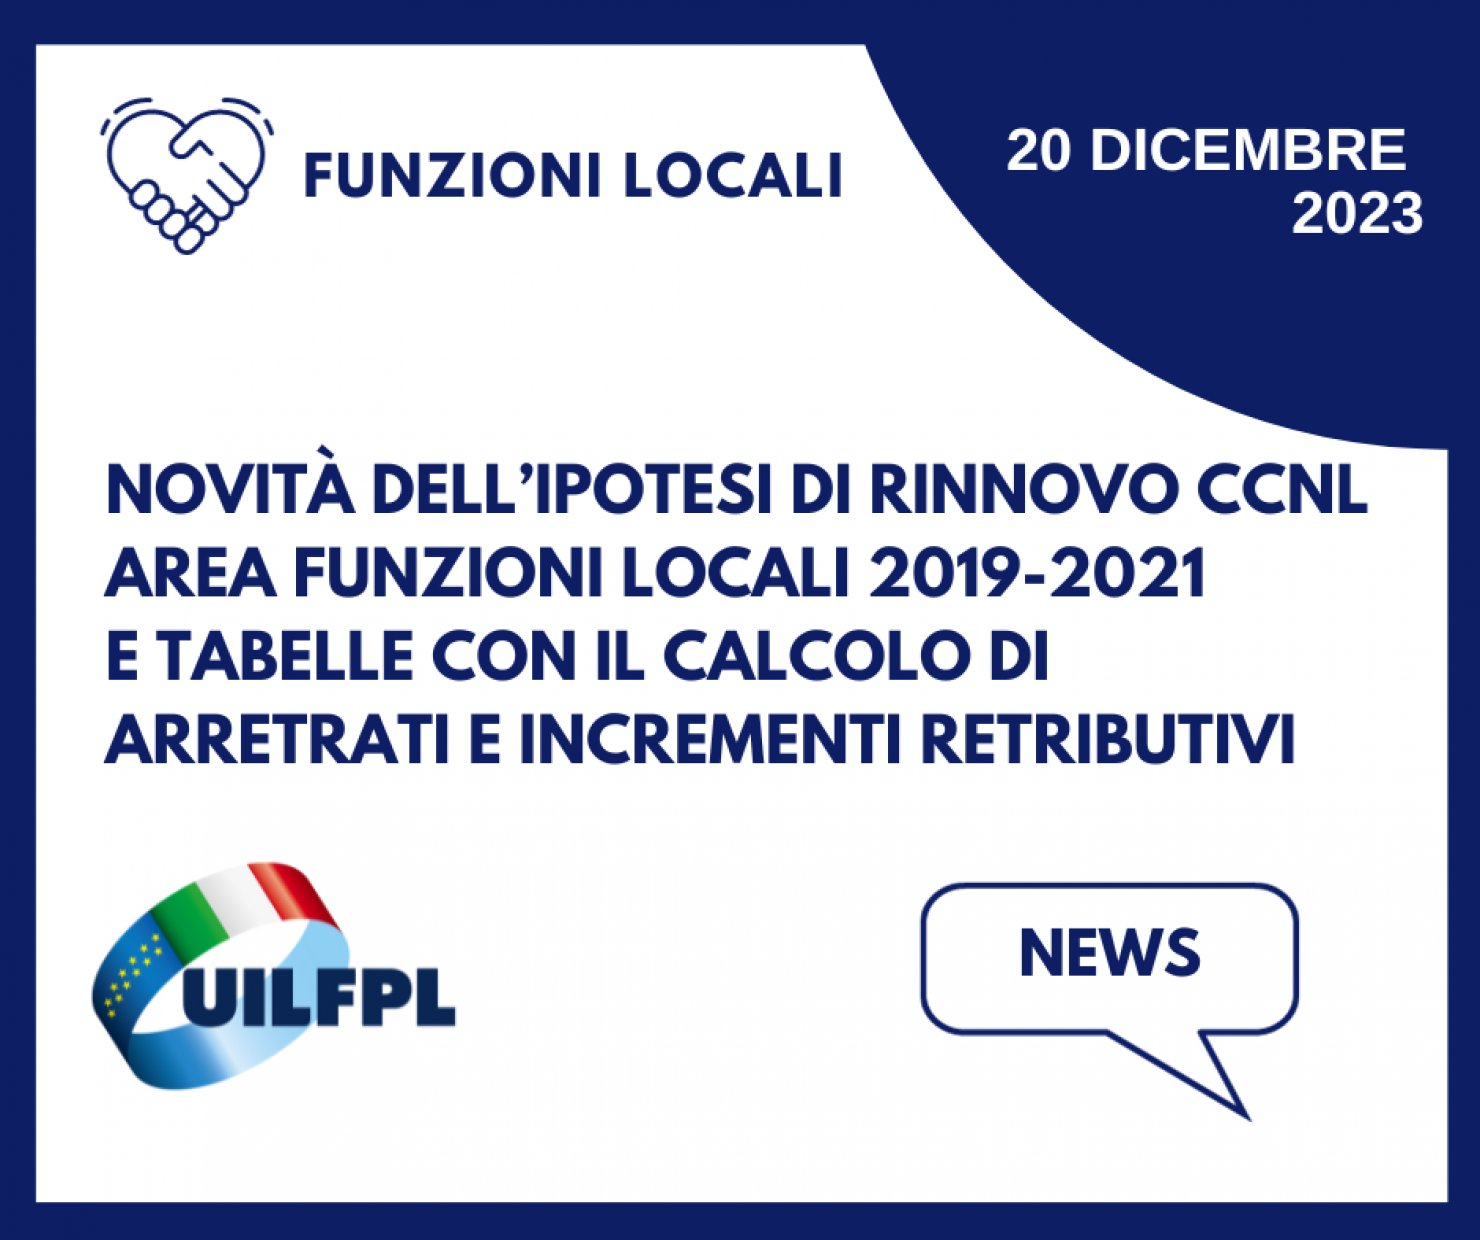 Le novità dell’ipotesi di rinnovo del CCNL dell’Area Funzioni Locali 2019-2021